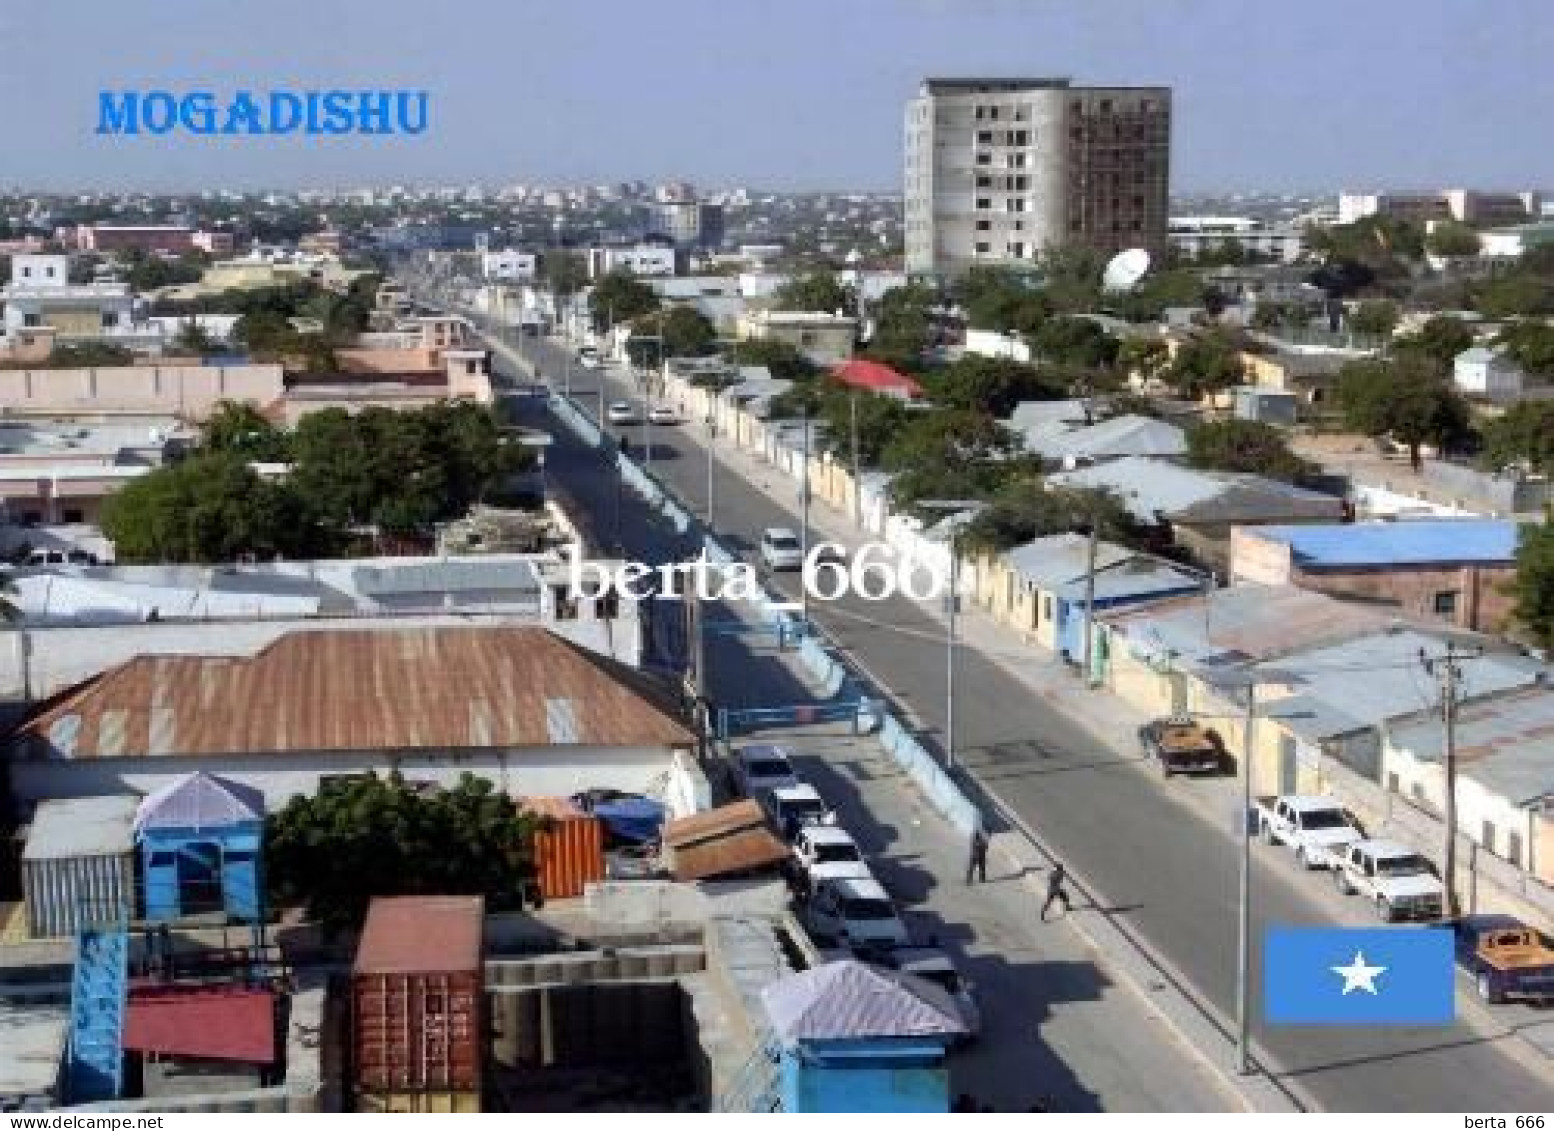 Somalia Mogadishu Street View New Postcard - Somalia